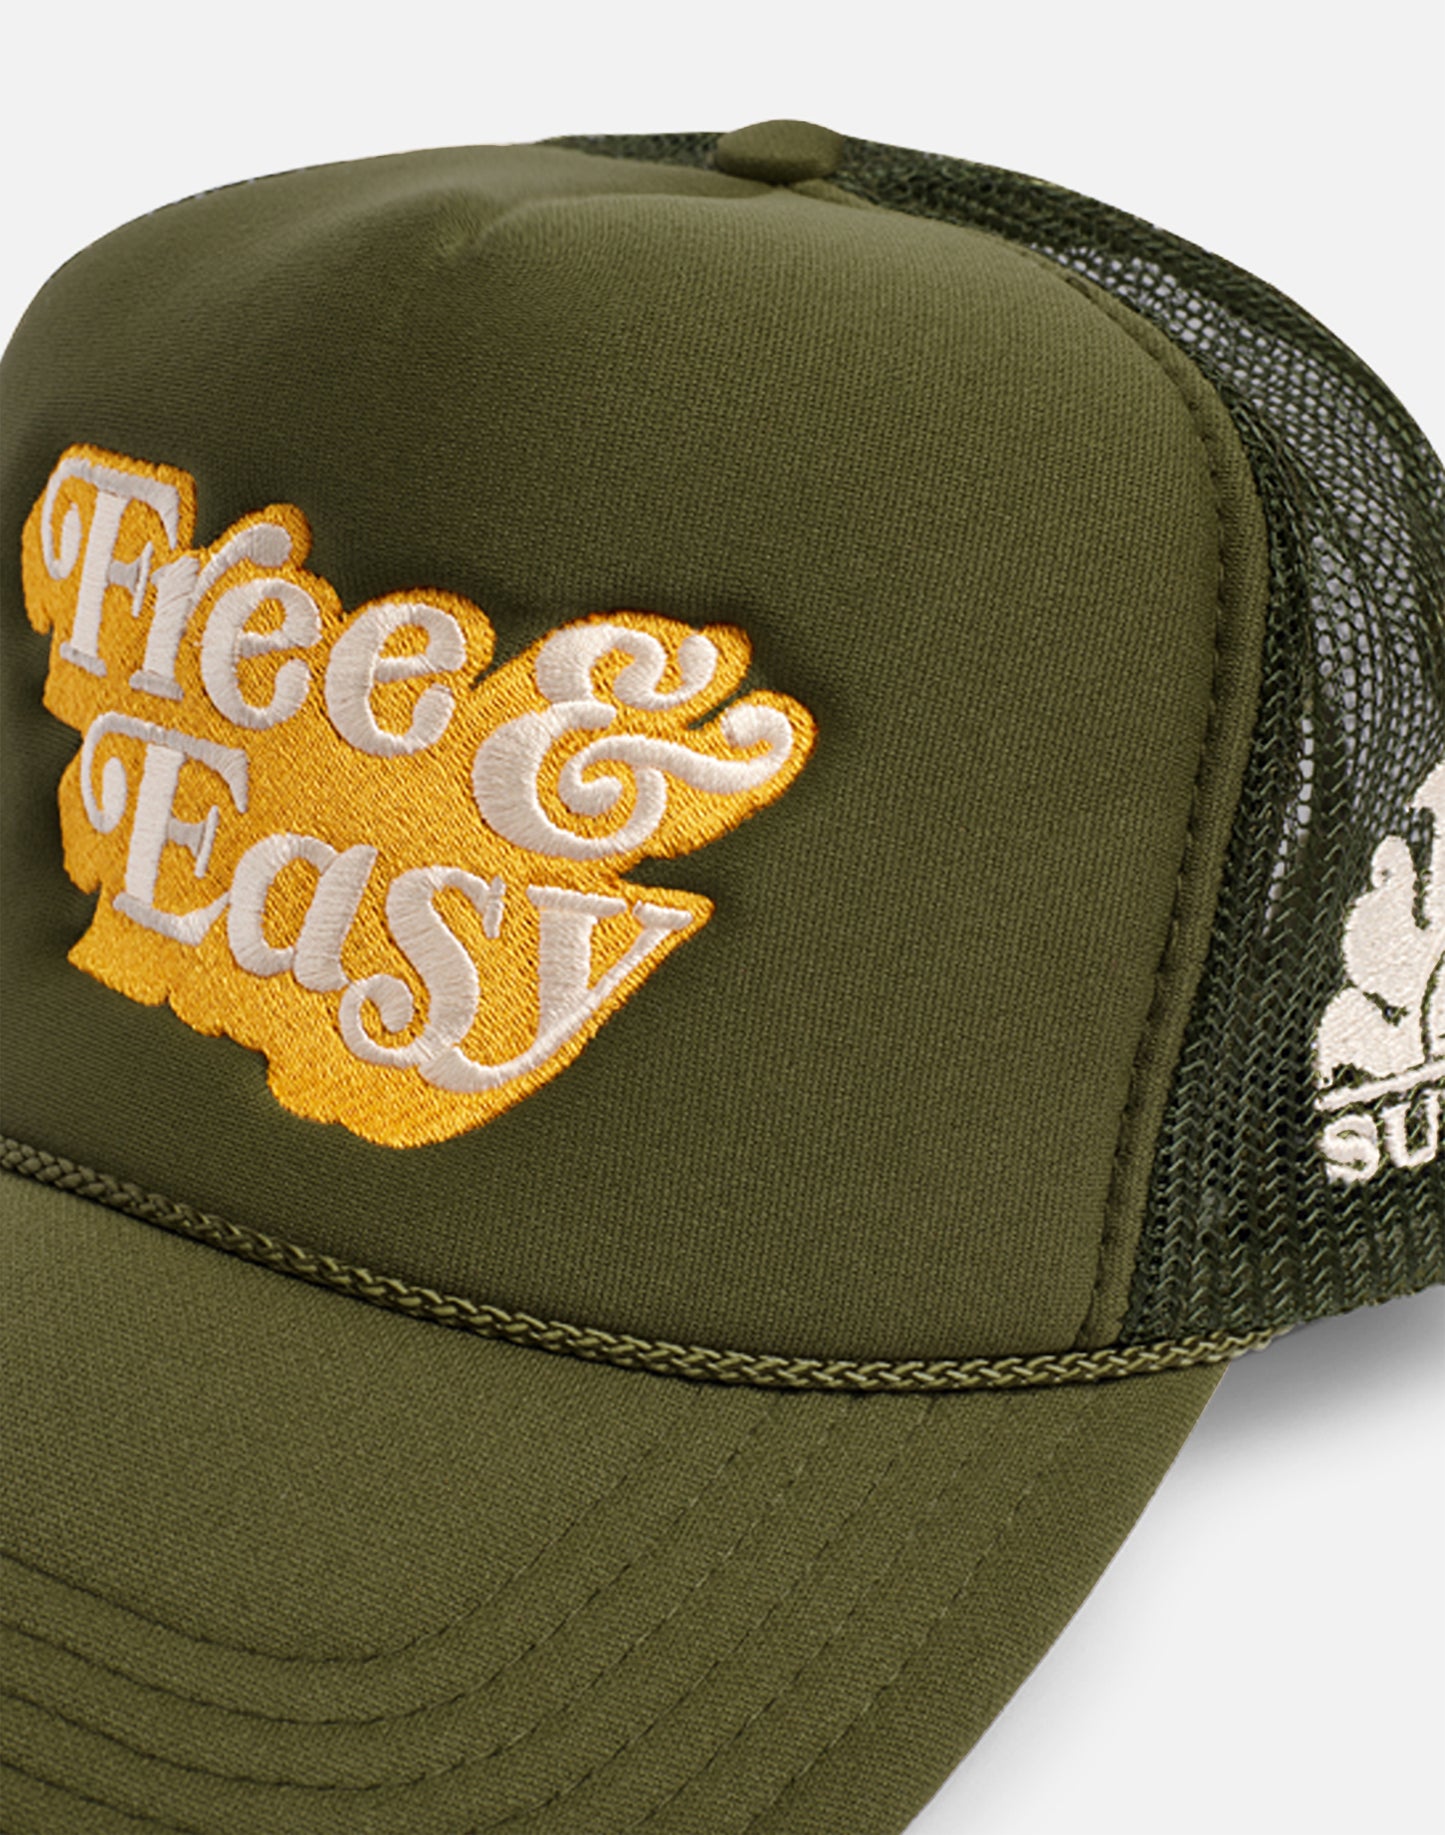 FREE&EASY CAP FOR SUNDEK